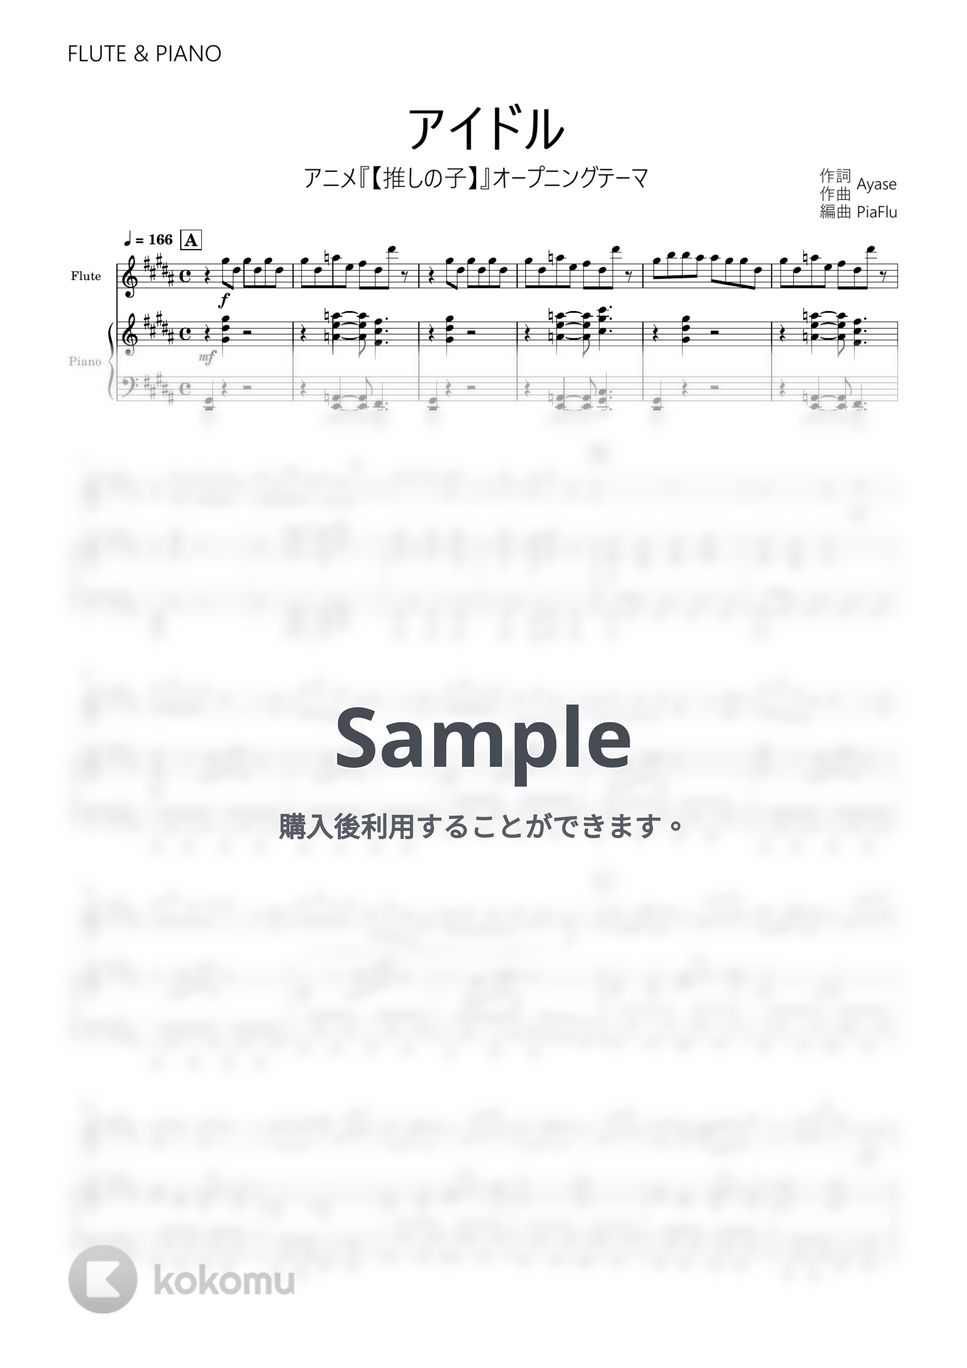 YOASOBI - アイドル (フルート&ピアノ伴奏) by PiaFlu